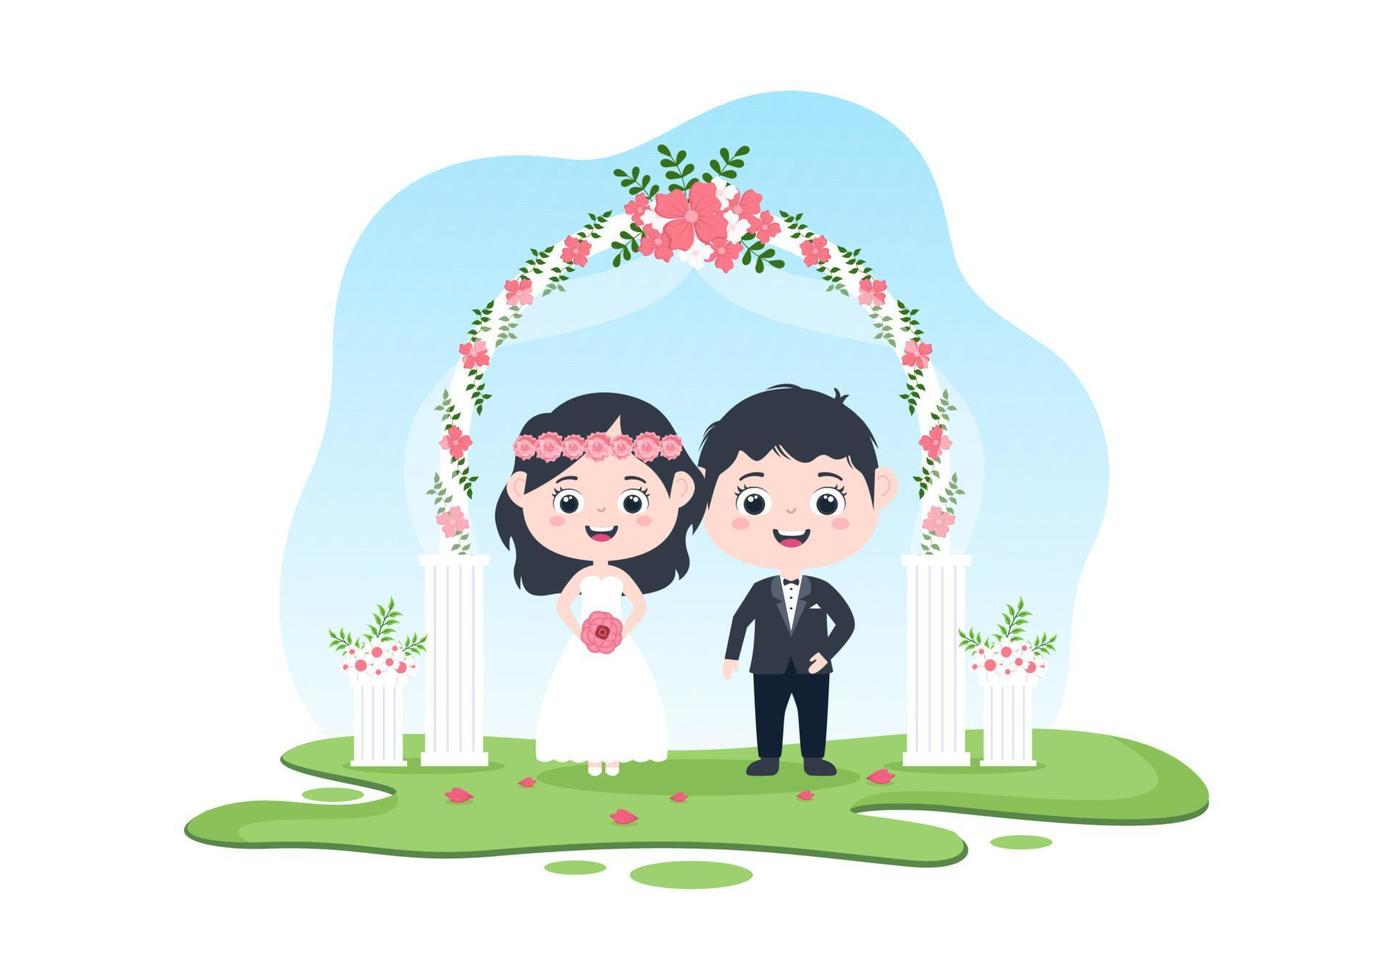 gelukkig paar dat huwelijk of gehuwde ceremonie viert met mooie bloemdecoraties buitenruimte in vlakke achtergrond cartoon stijlillustratie vector